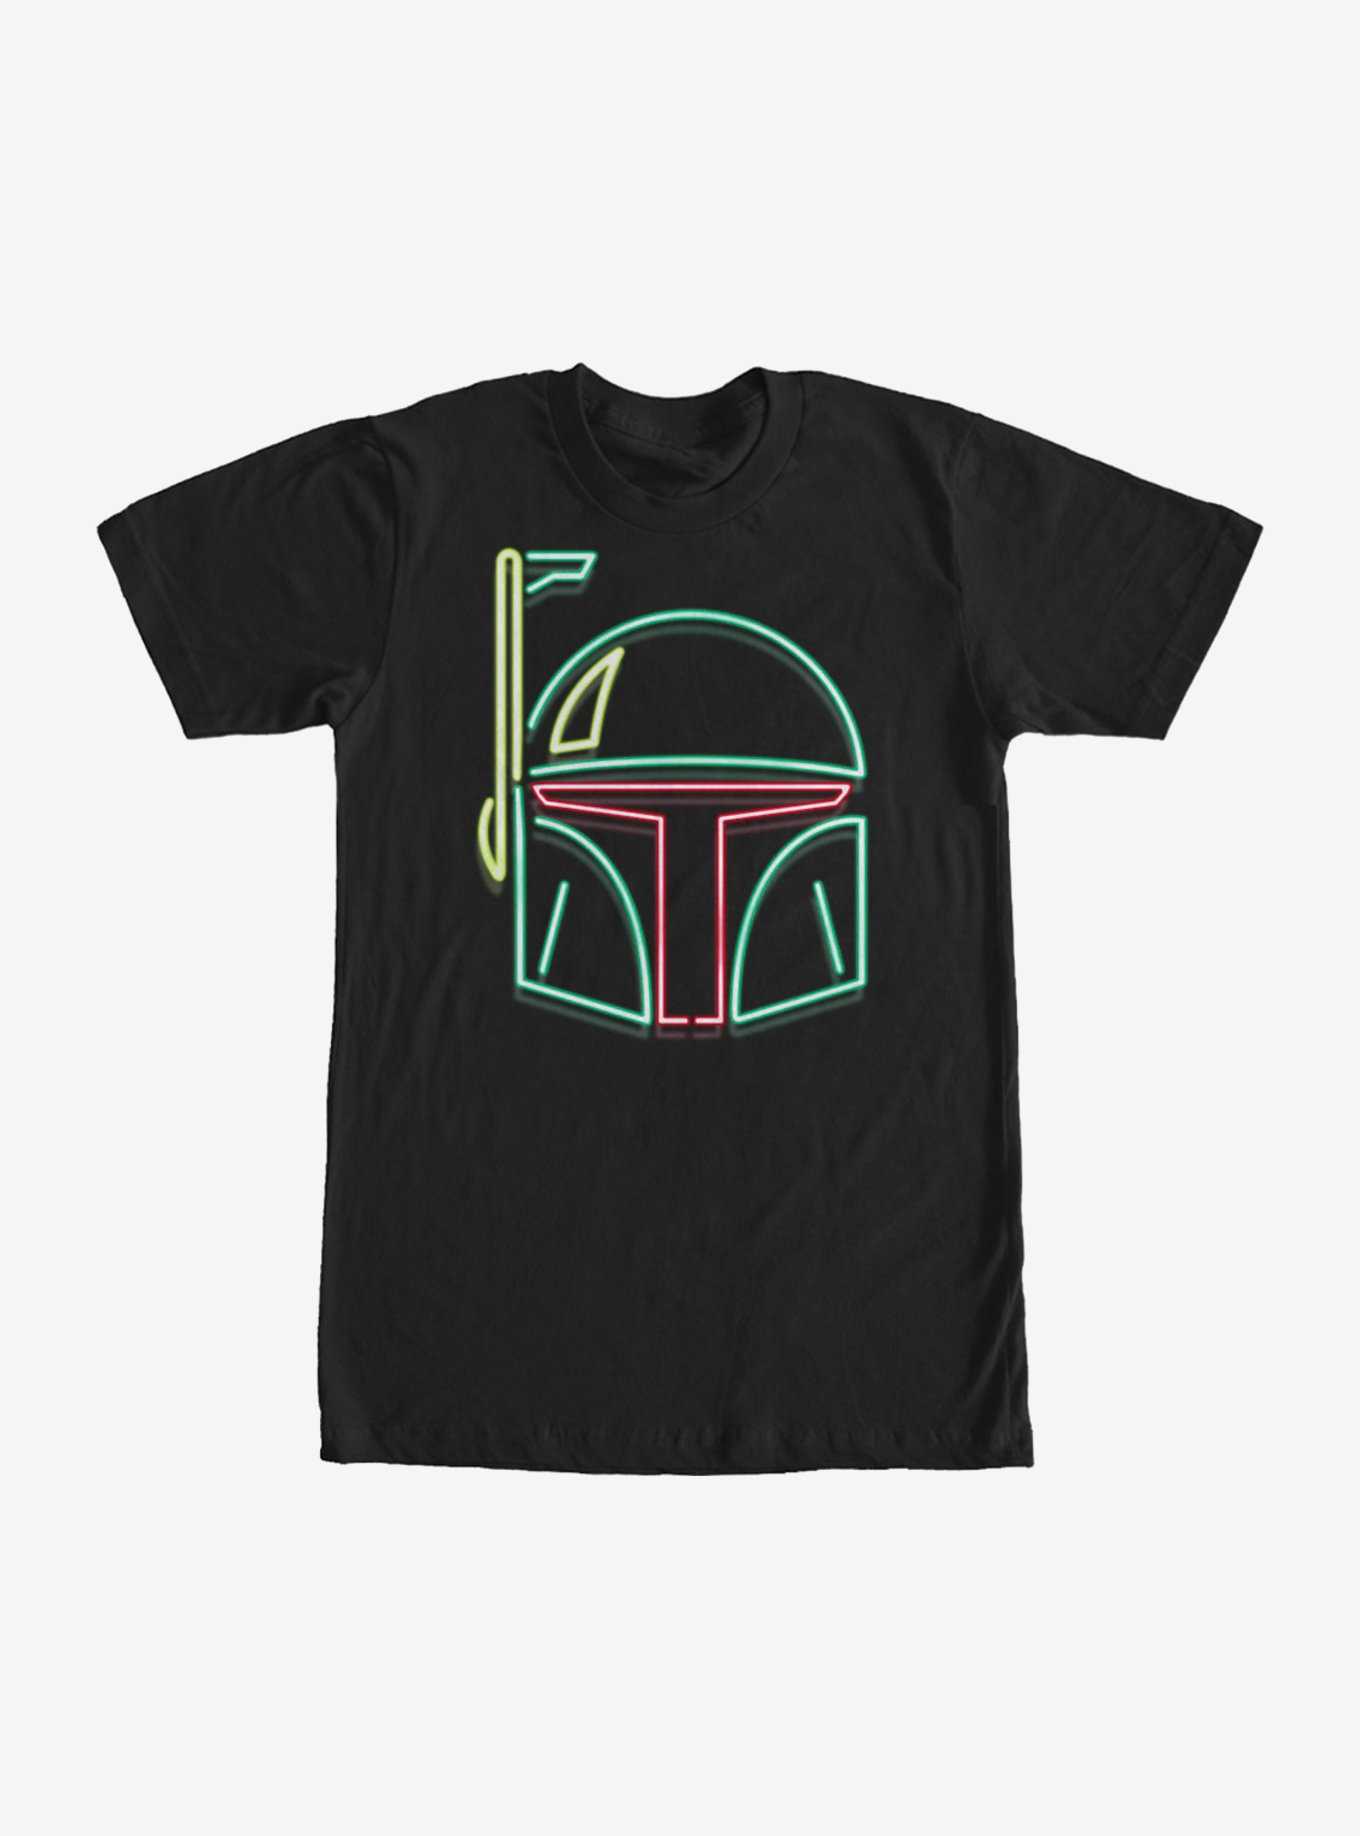 Star Wars Boba Fett Neon Sign Helmet T-Shirt, , hi-res